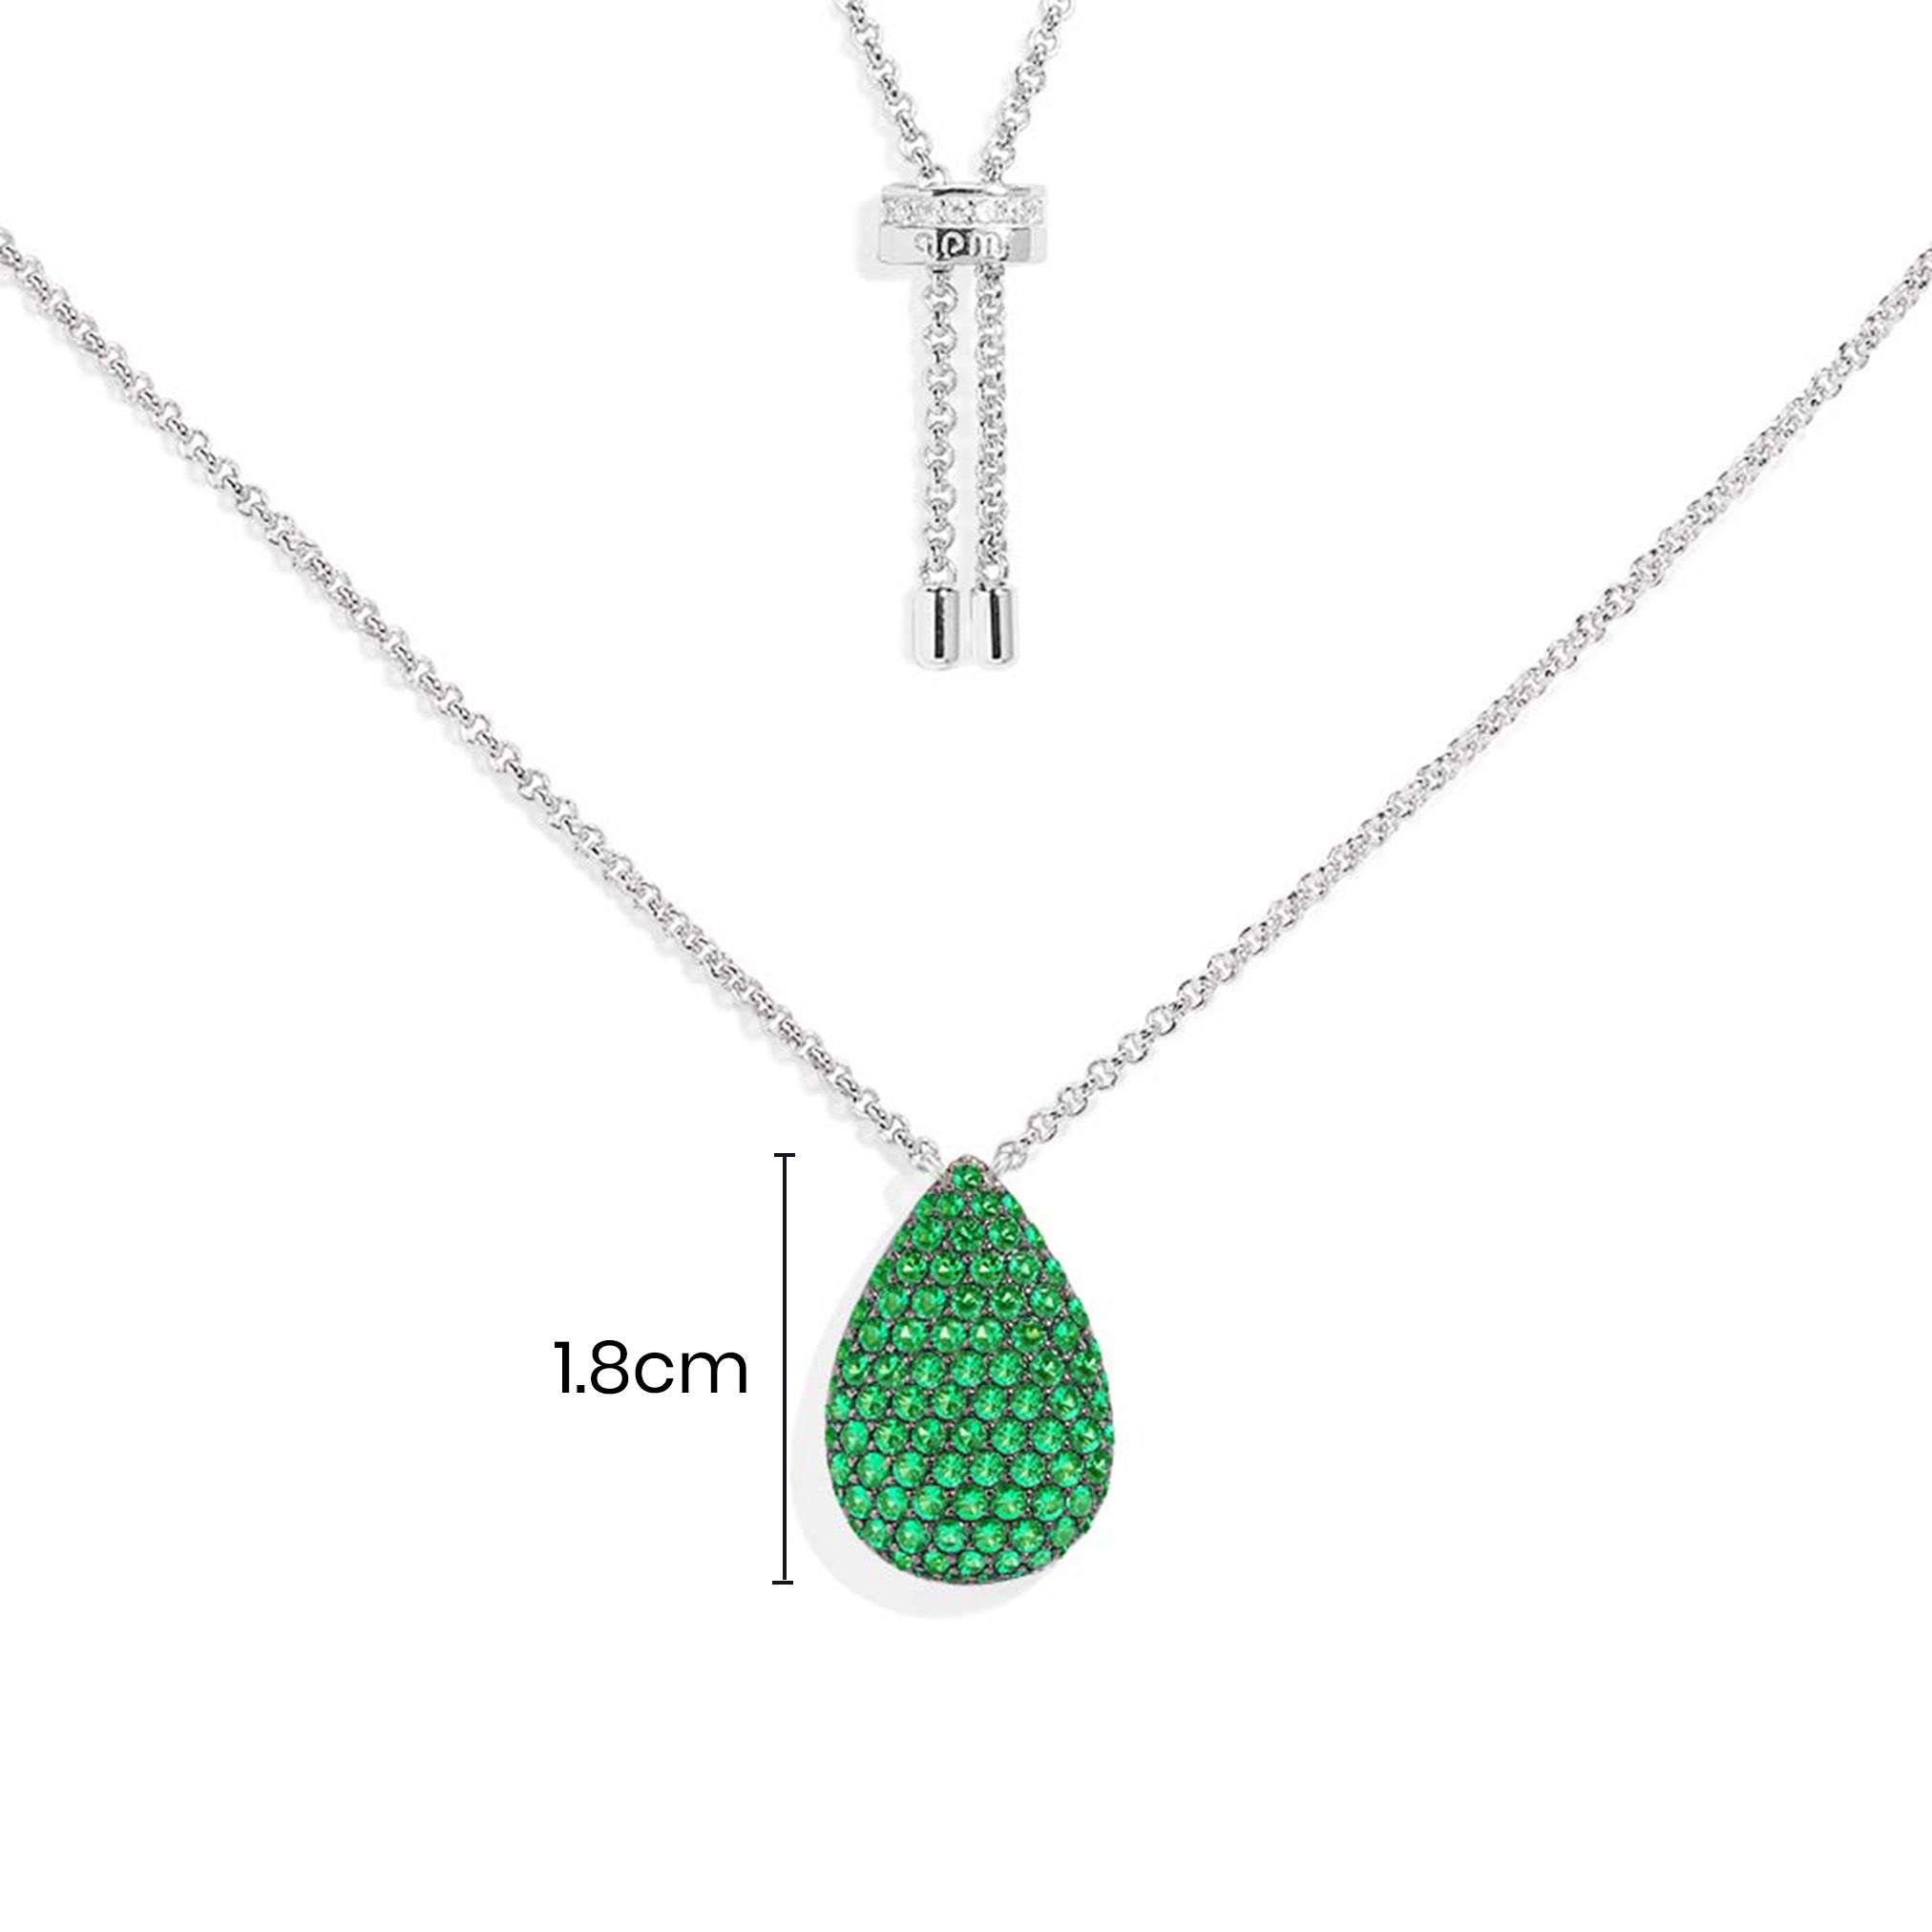 Adjustable Necklace with Green Drop - APM Monaco